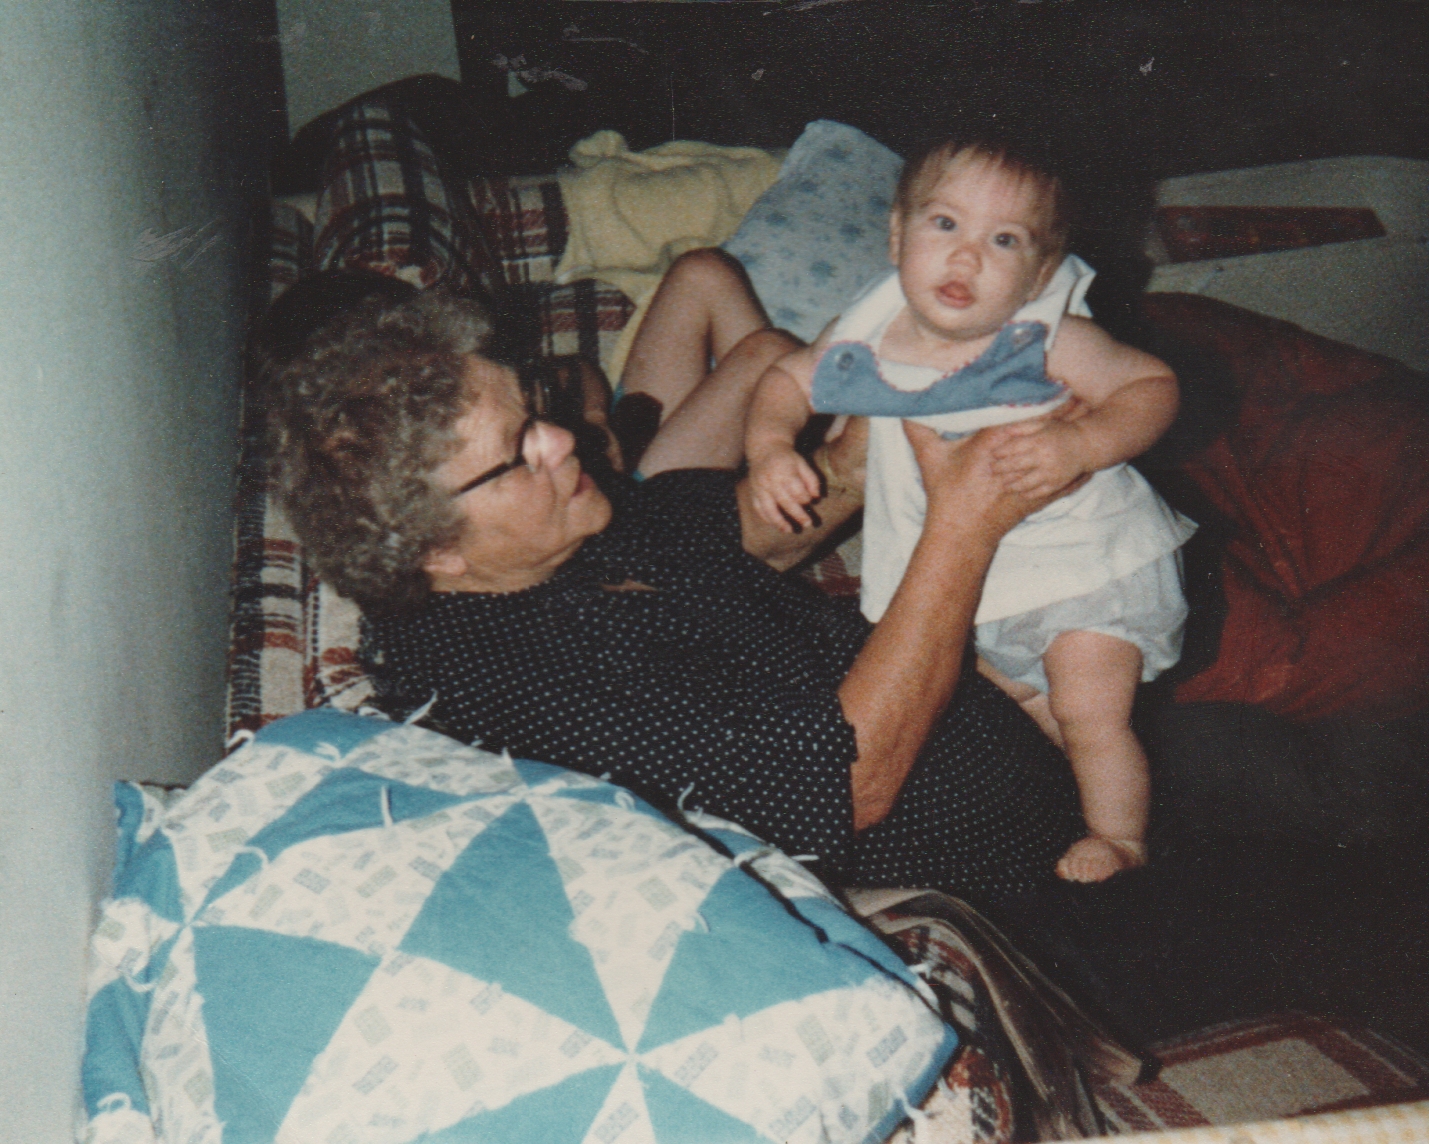 1983 maybe - Grandma Ann, Alan.jpg